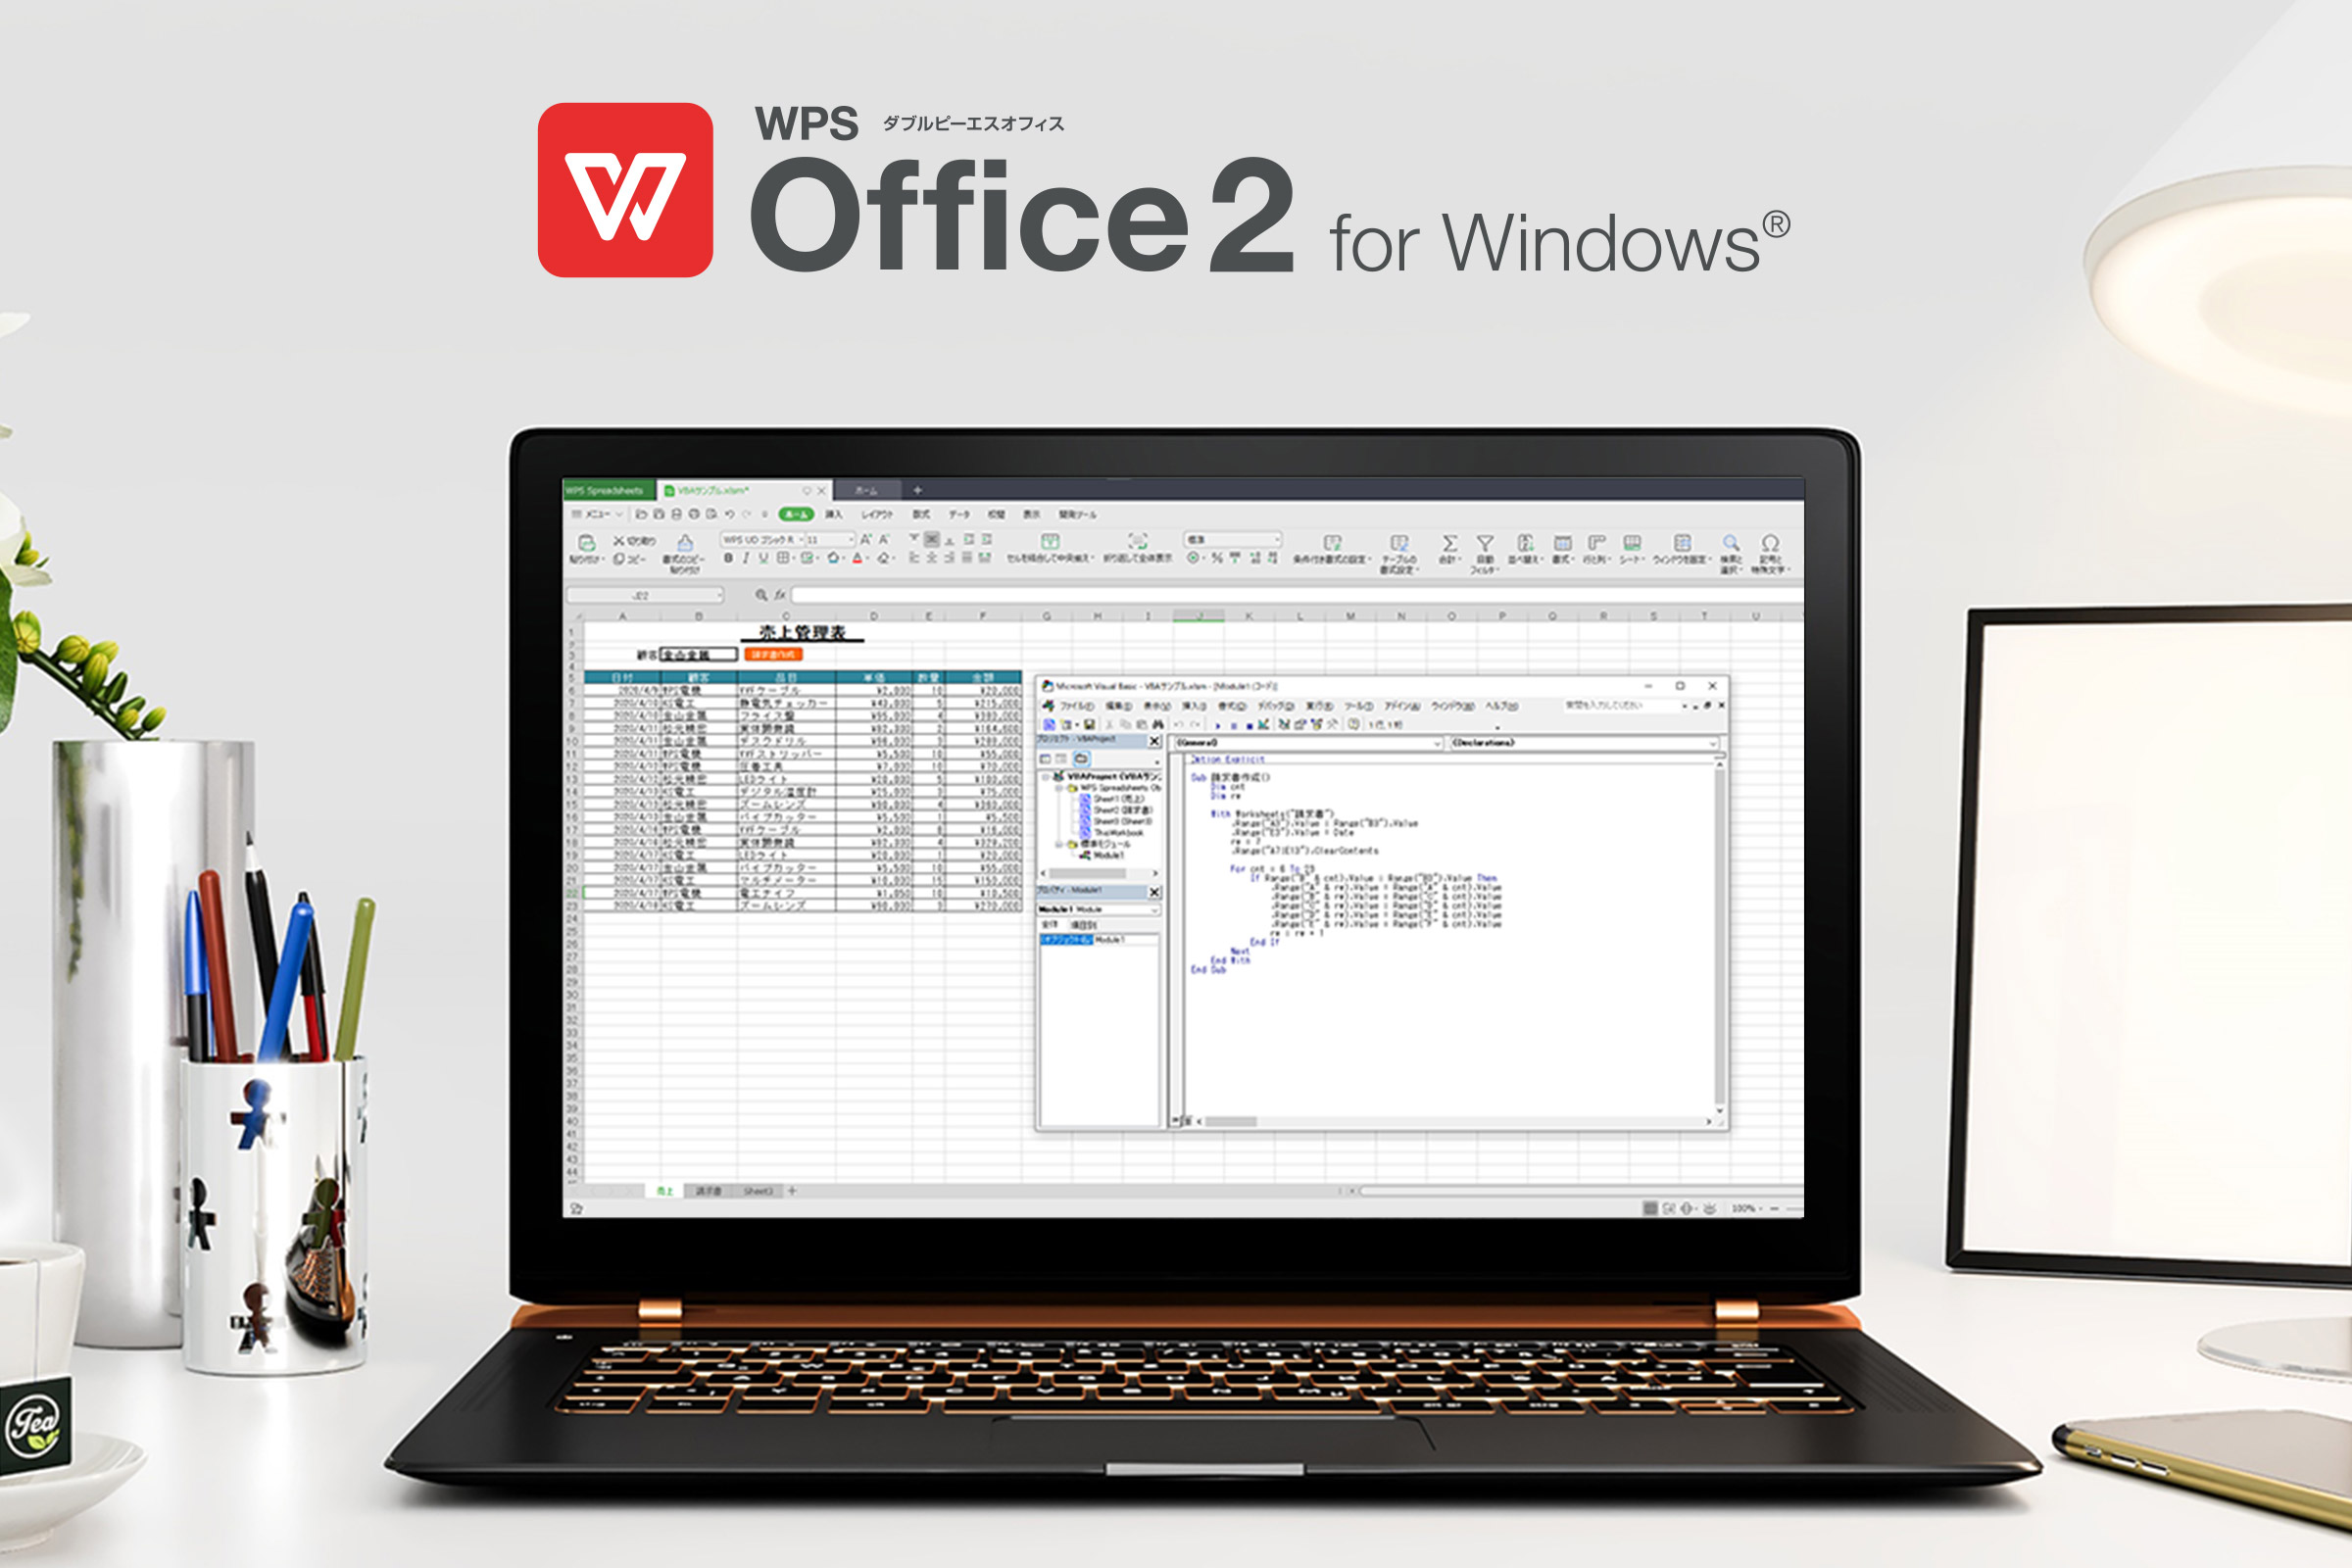 WPS Office 2 for Windows